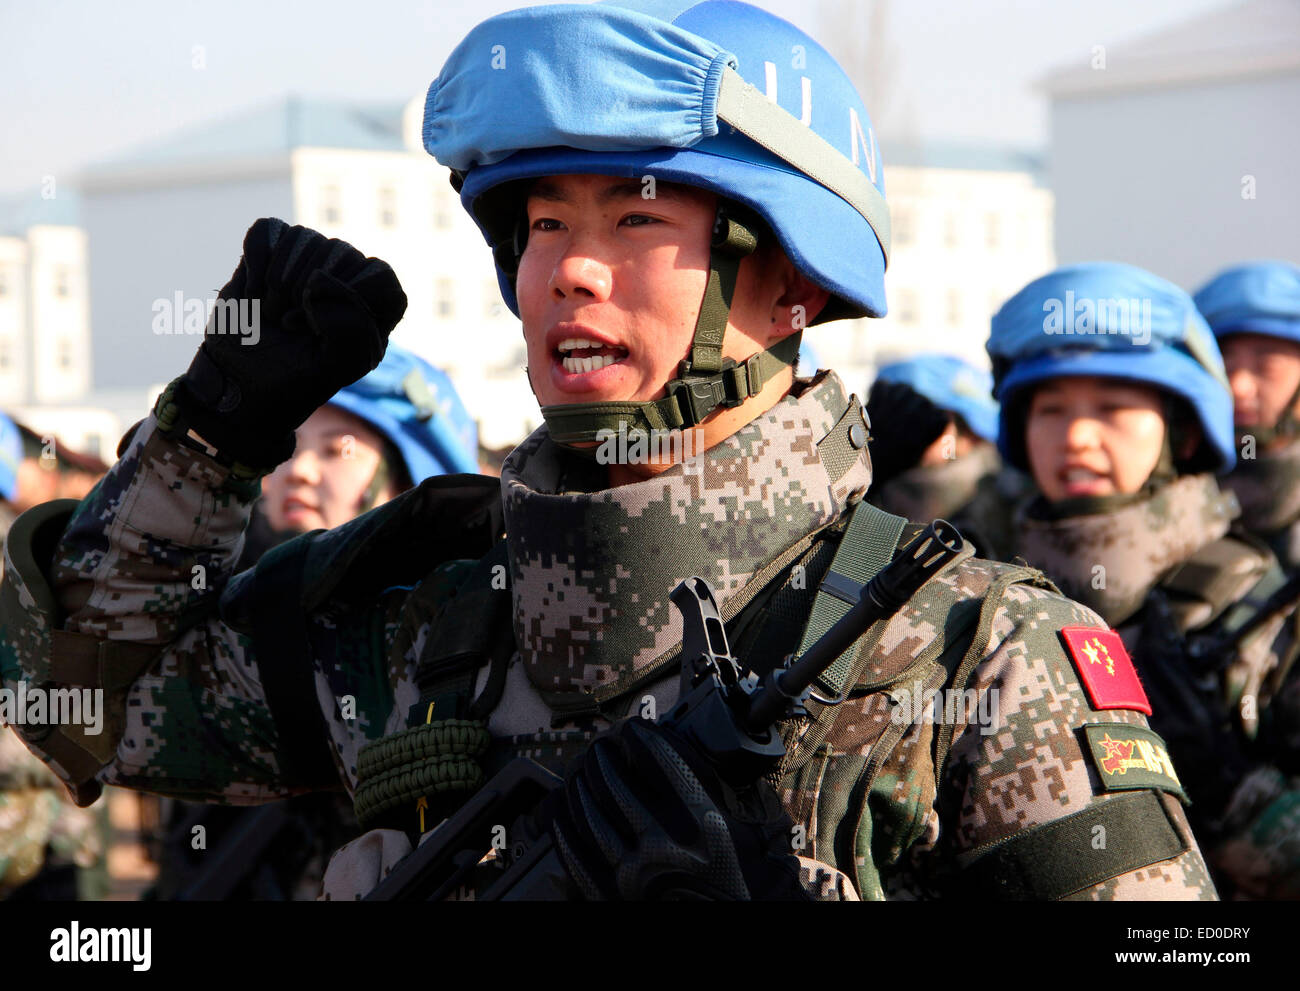 Laiyang, Shandong, Chine. Dec 22, 2014. Premier bataillon de maintien de la paix chinois va aller en mission de maintien de la paix au Soudan pour Laiyang, Shandong, Chine, le 22 décembre, 2014. Credit : TopPhoto/Alamy Live News Banque D'Images